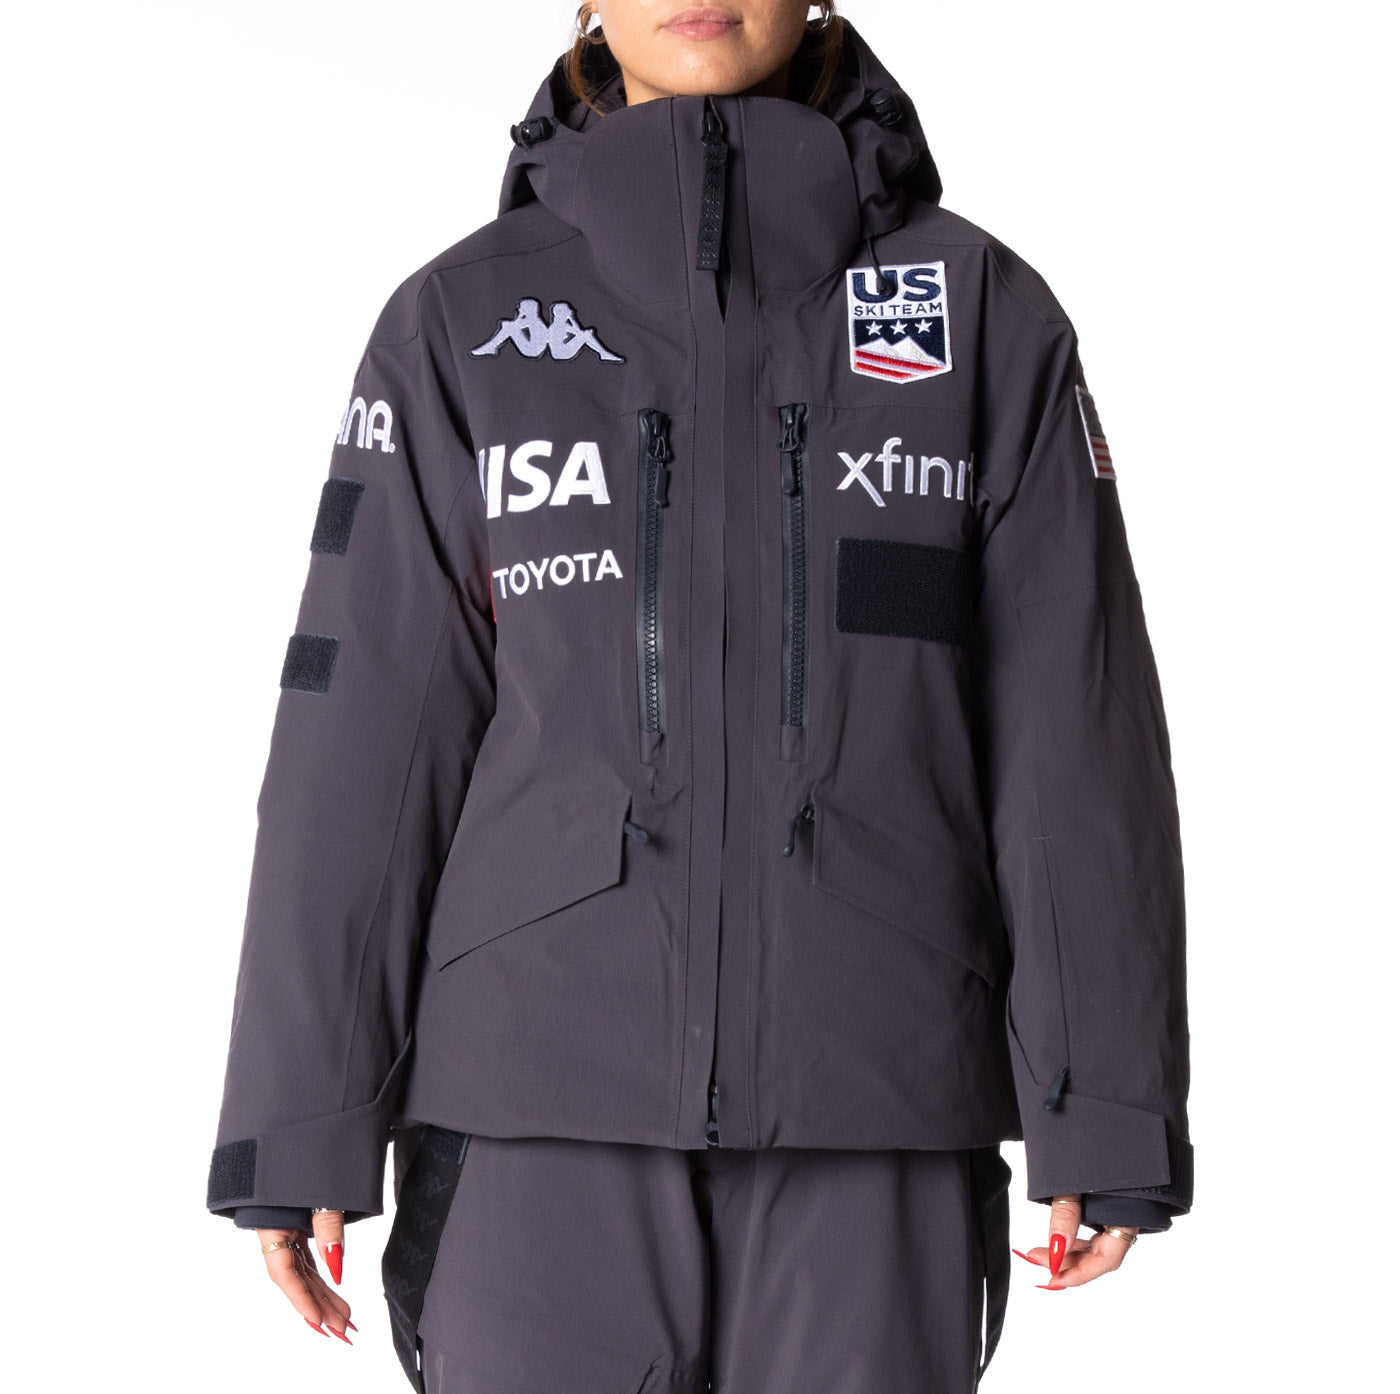 kan niet zien Peru opslaan 6Cento 604T US Ski Jacket - Navy – Kappa USA